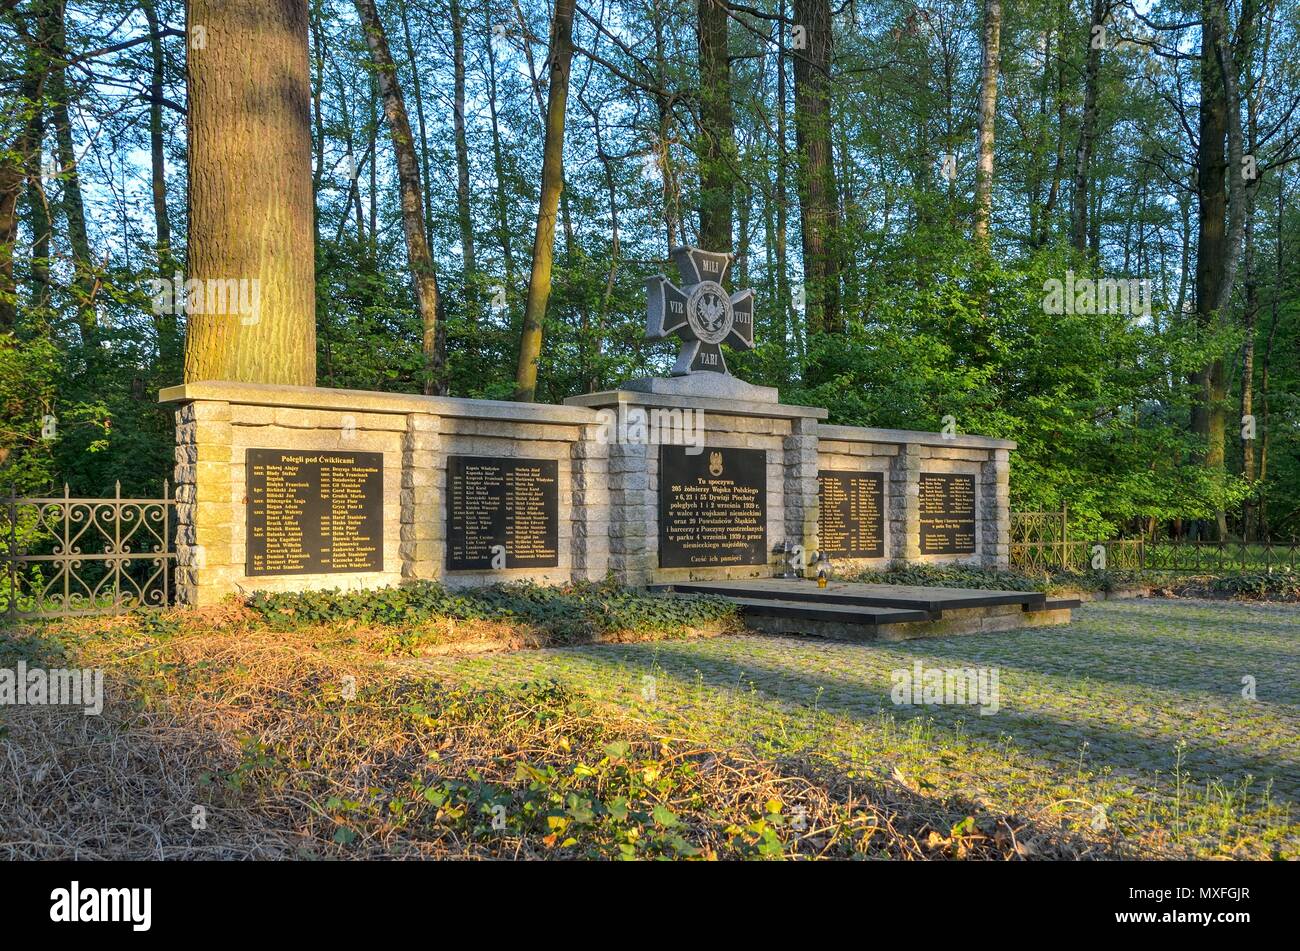 PSZCZYNA, Polen - 22. APRIL 2018: Denkmal zur Erinnerung an 205 Soldaten der polnischen Armee in Pszczyna, Polen. Stockfoto